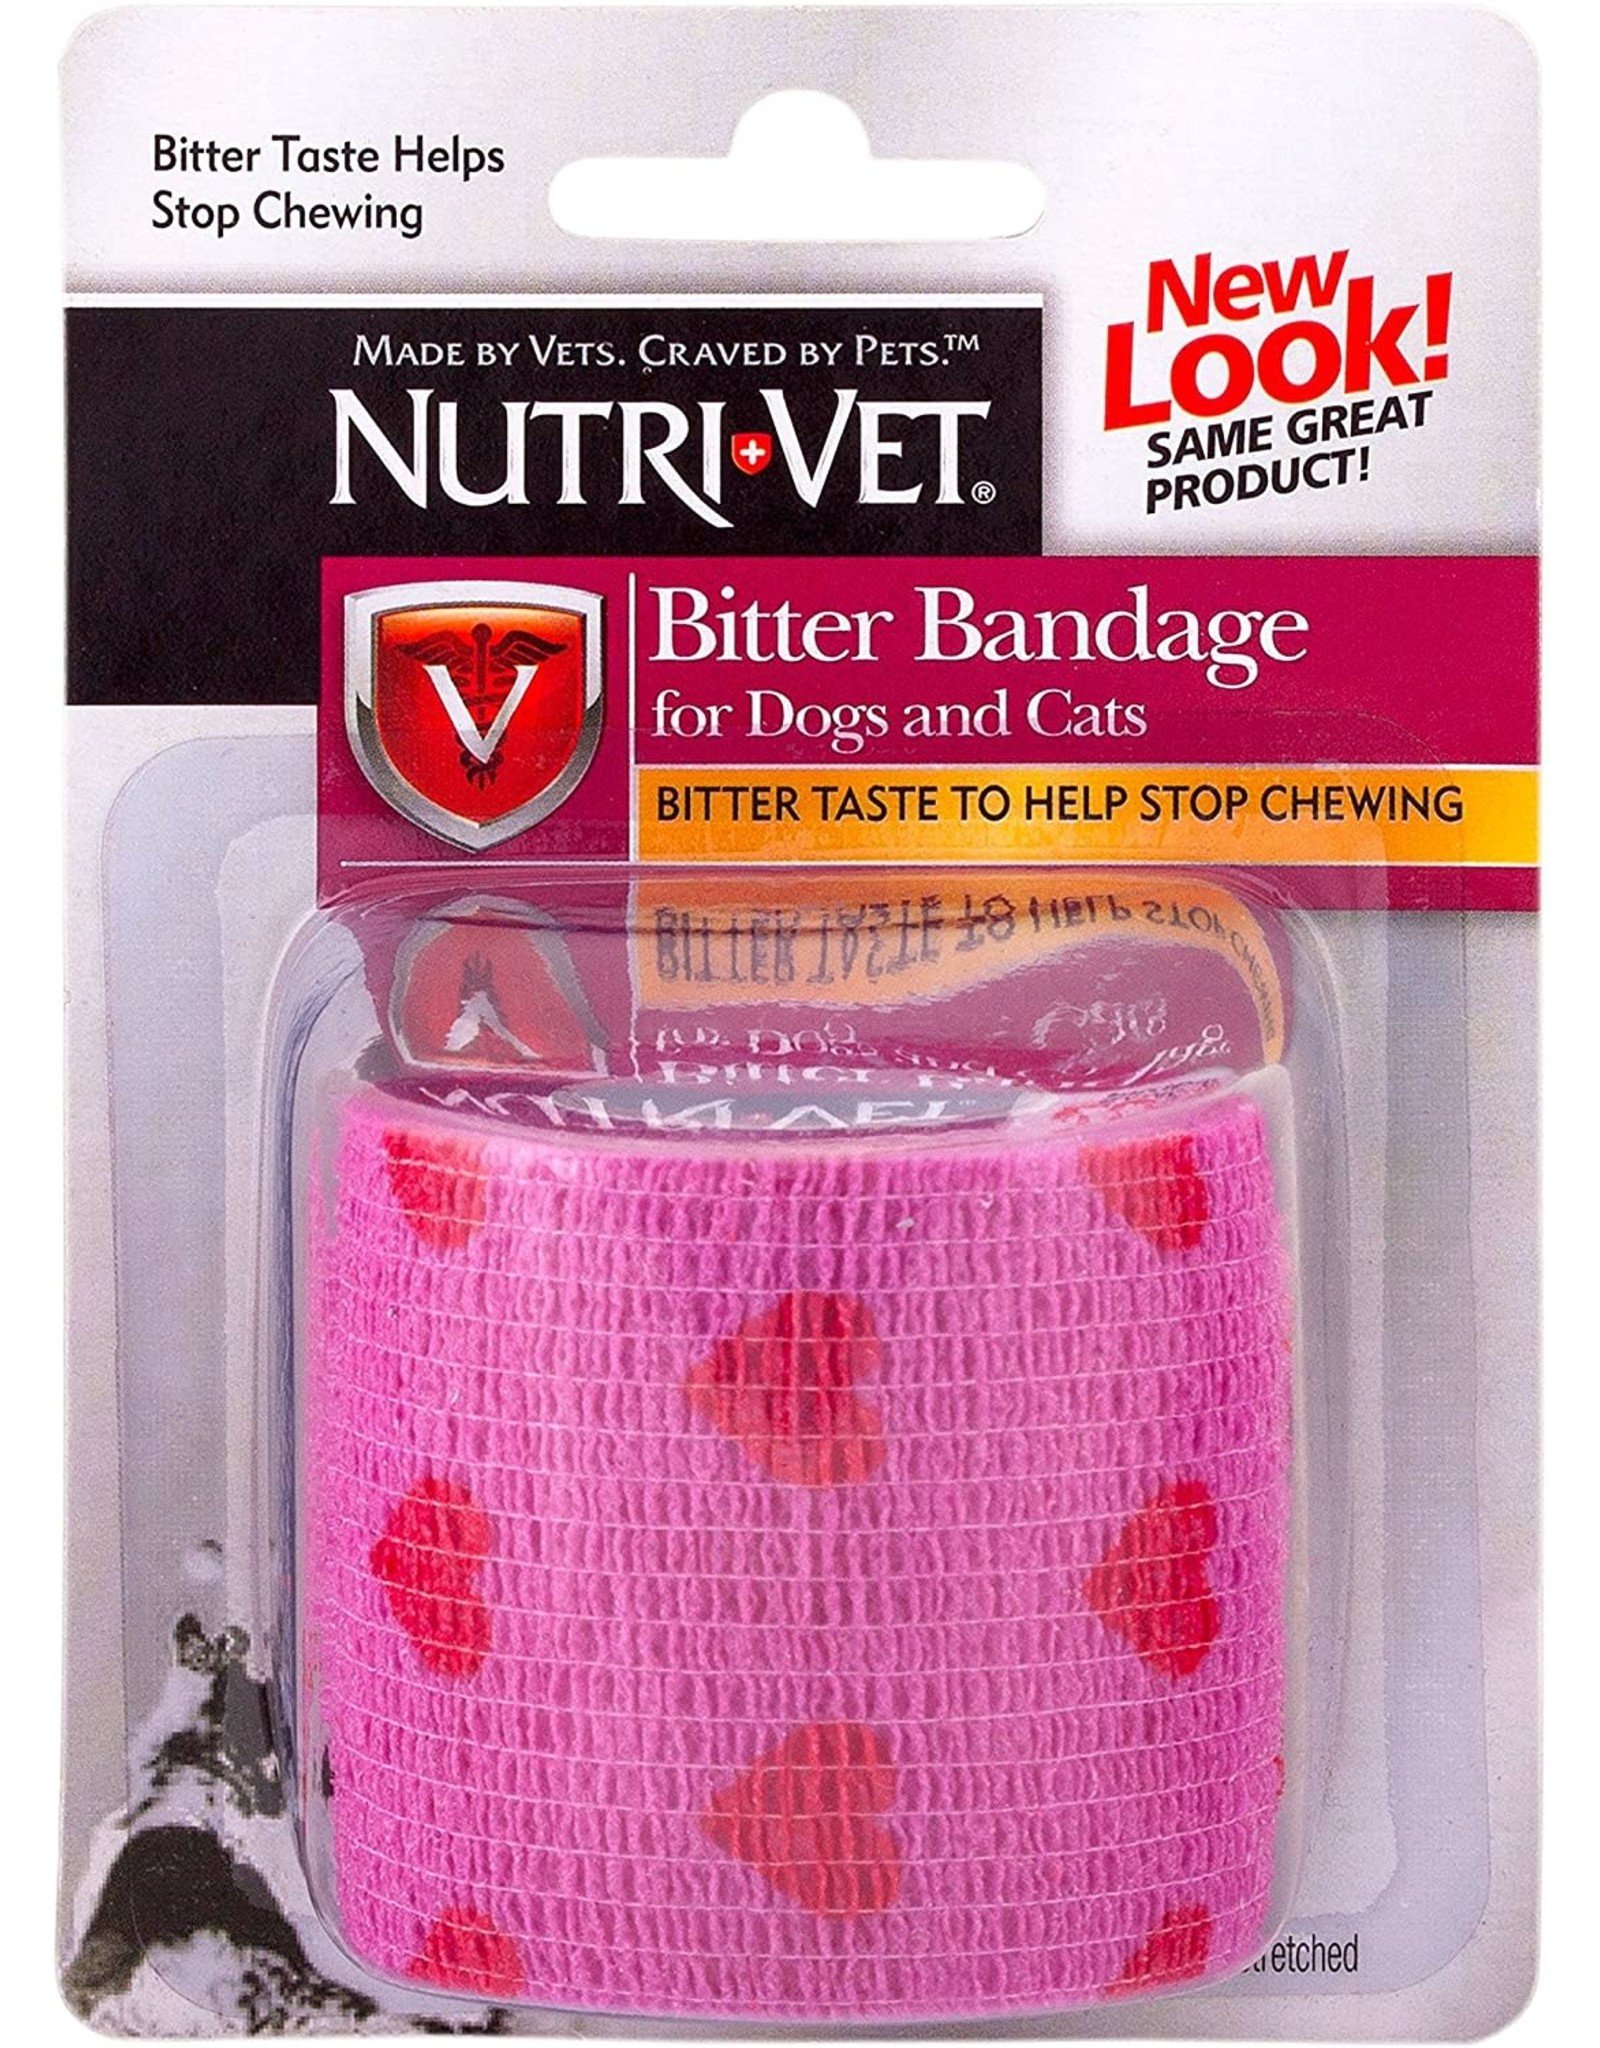 Nutri-Vet NUTRI-VET BITTER BANDAGE FOR DOGS OR CATS